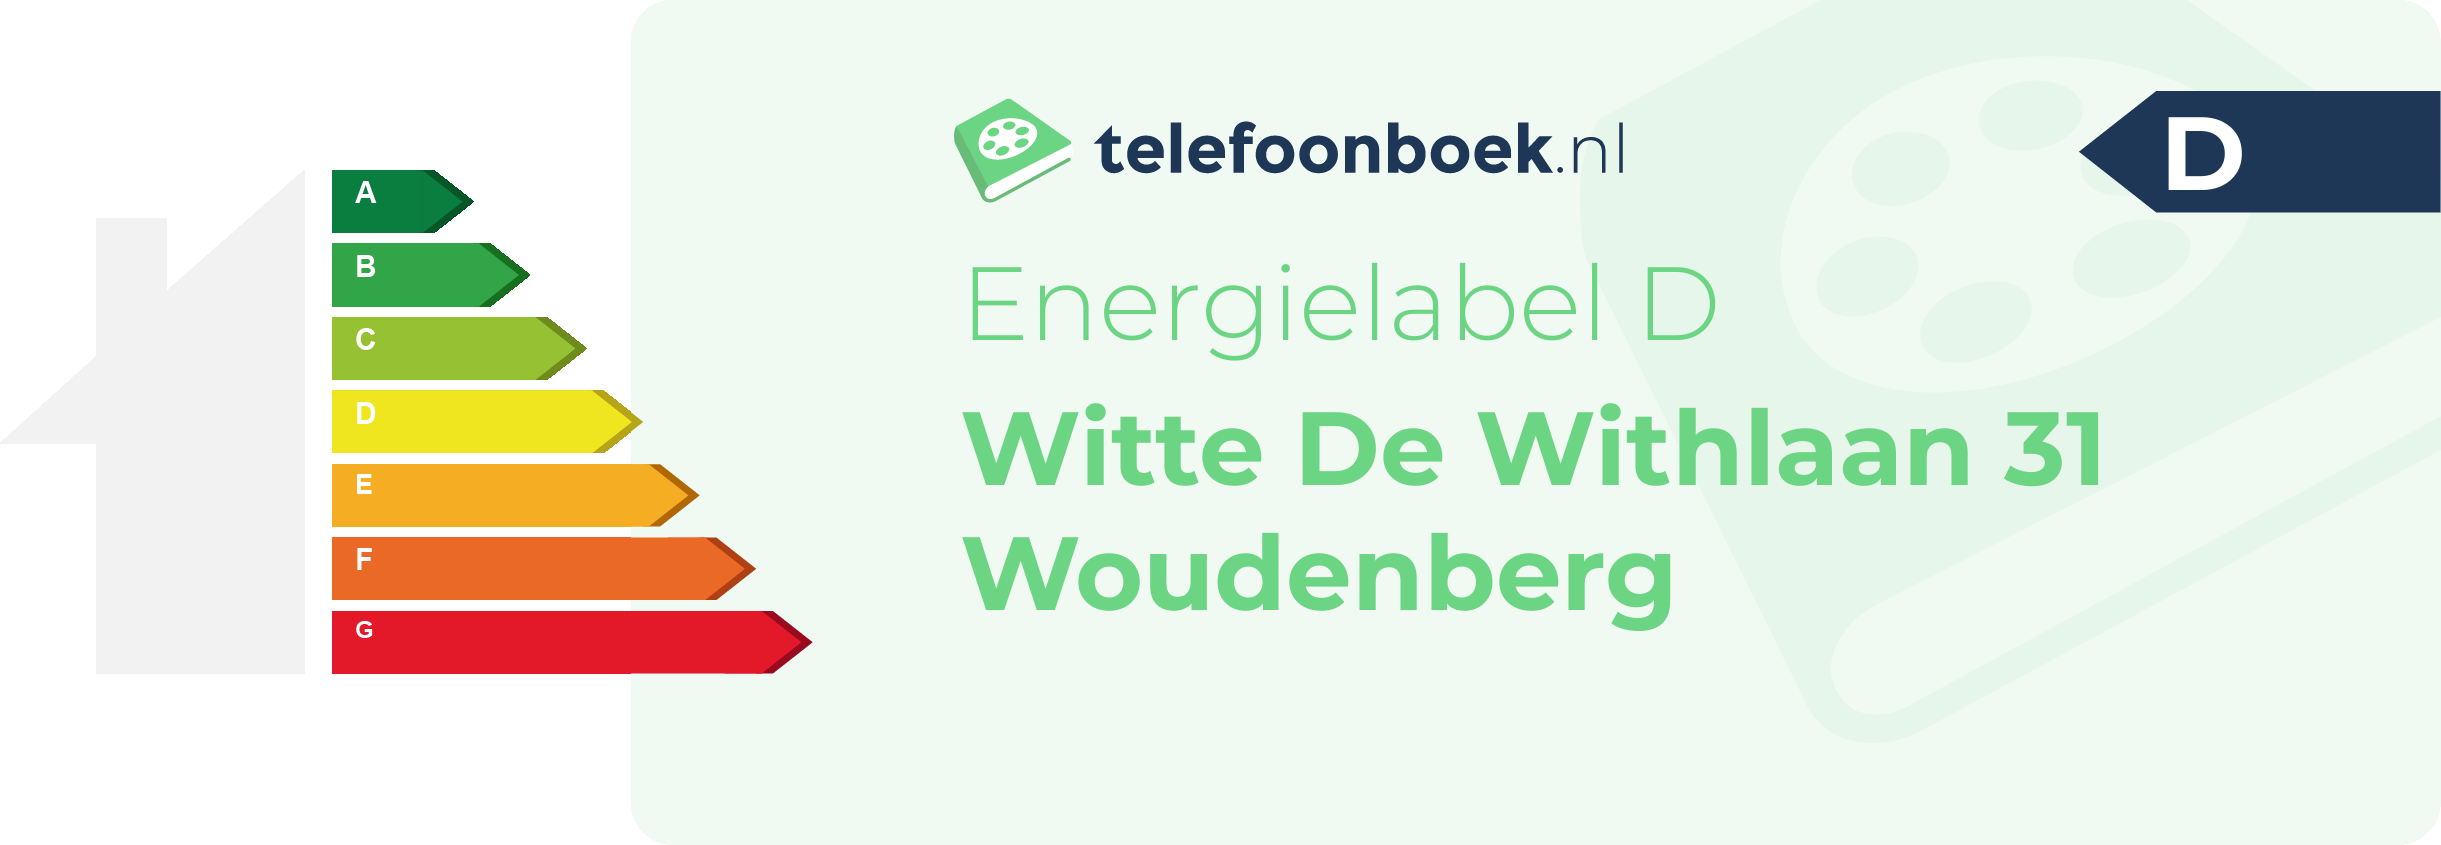 Energielabel Witte De Withlaan 31 Woudenberg